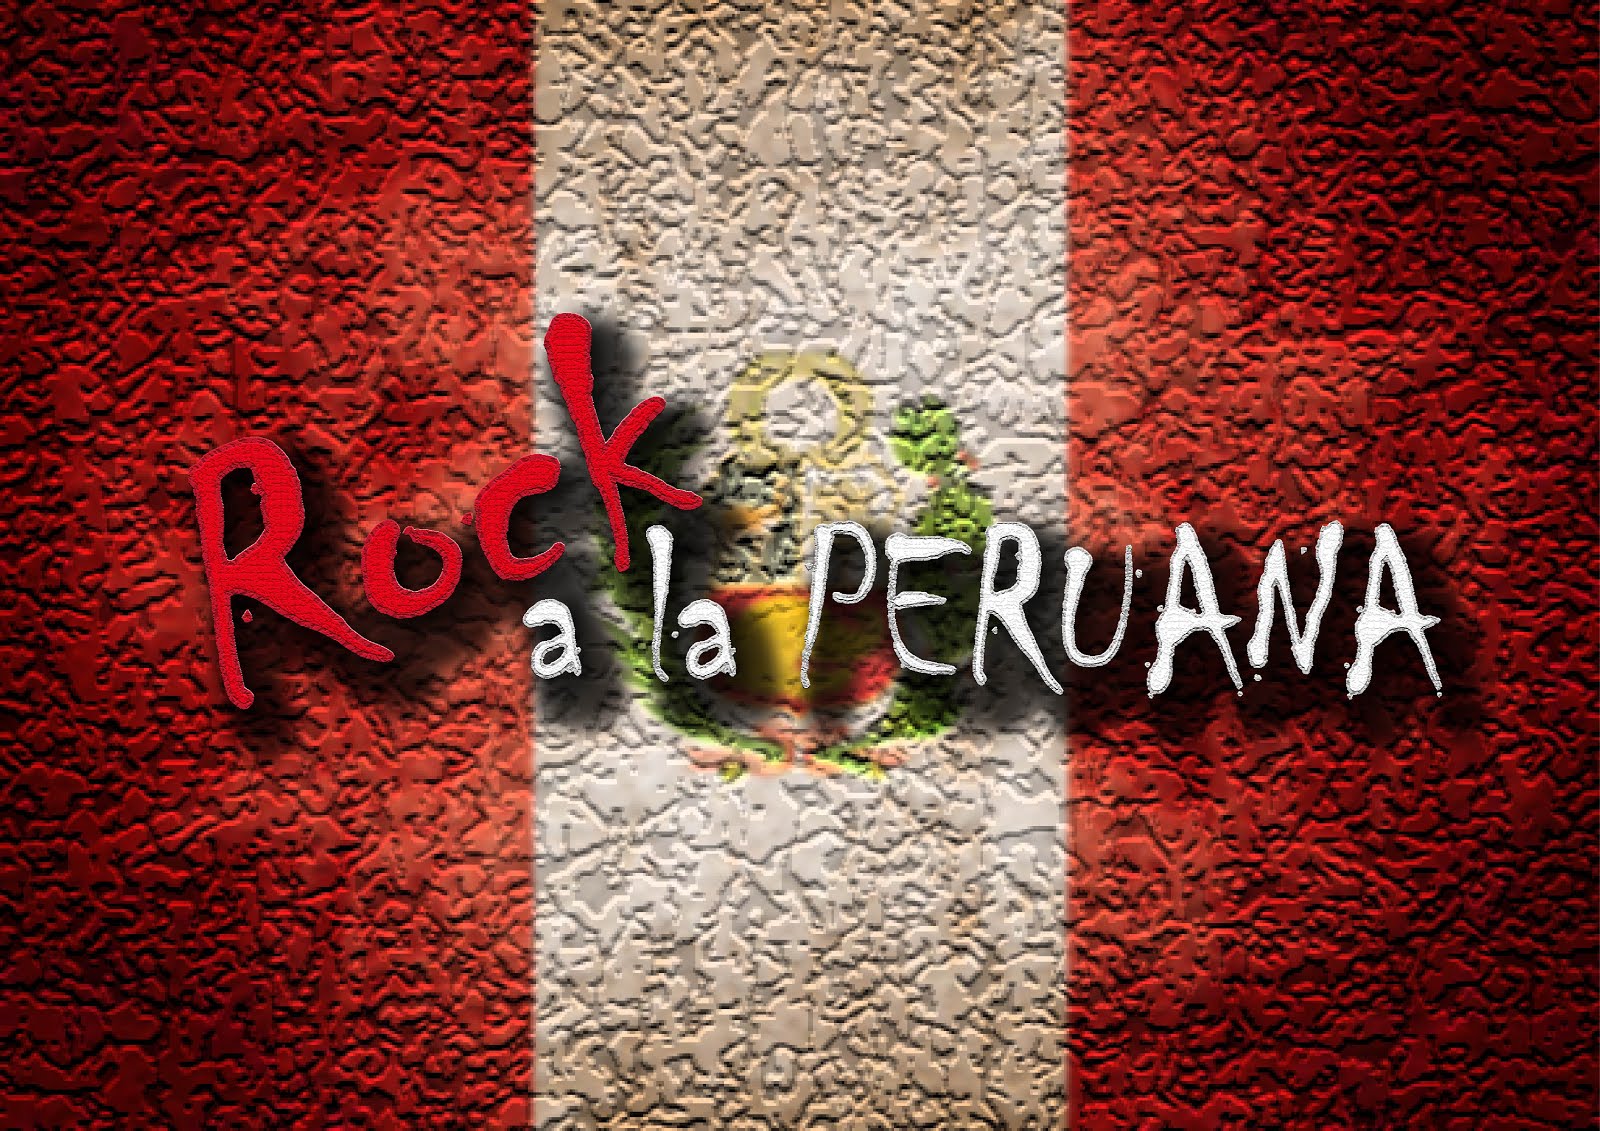 Rock a la PERUANA